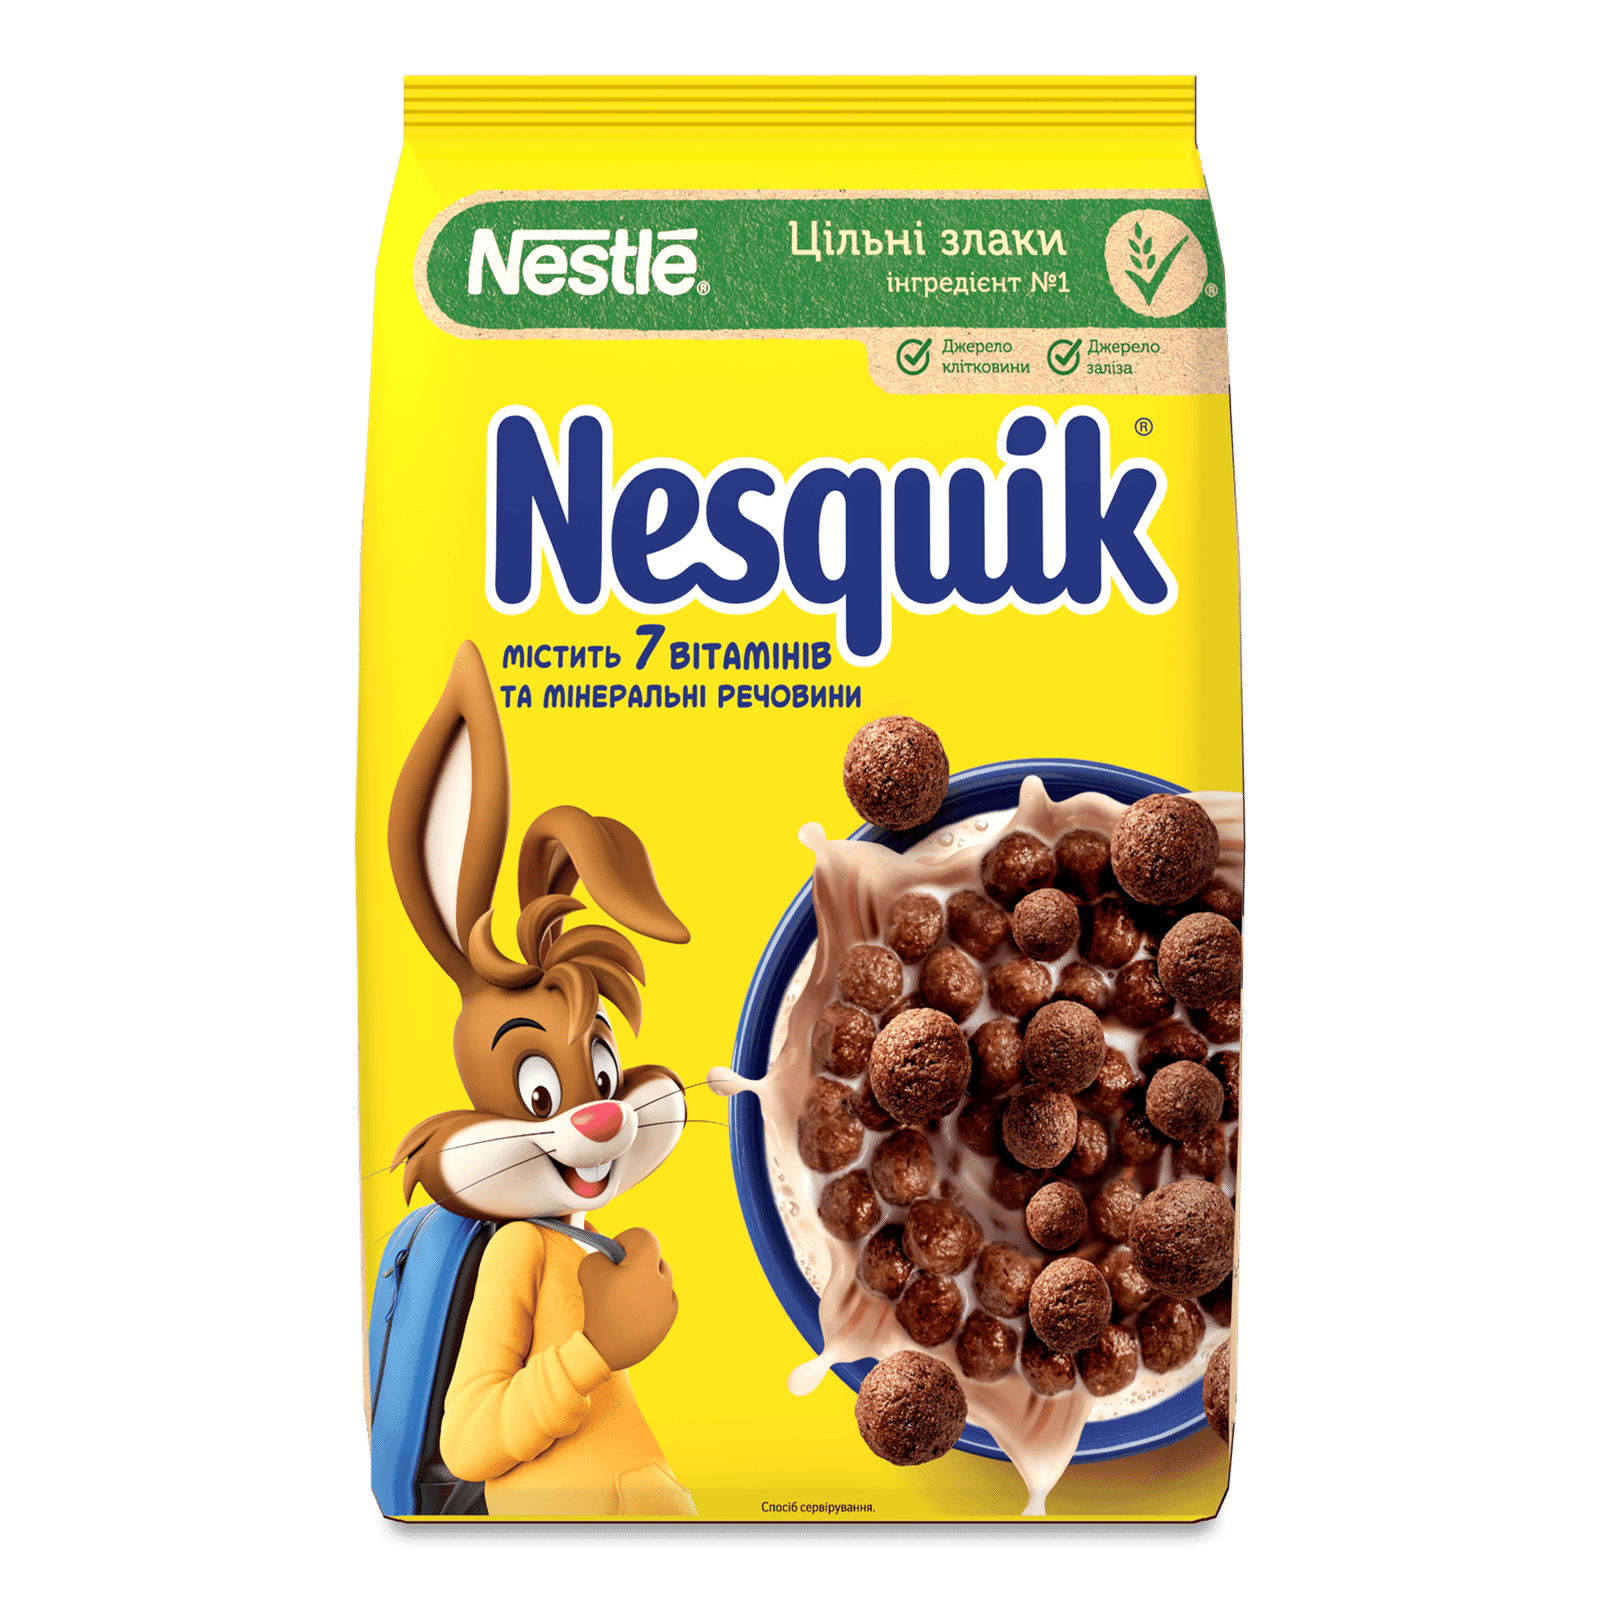 Сніданок готовий Nesquik з вітамінами та мінералами - 1